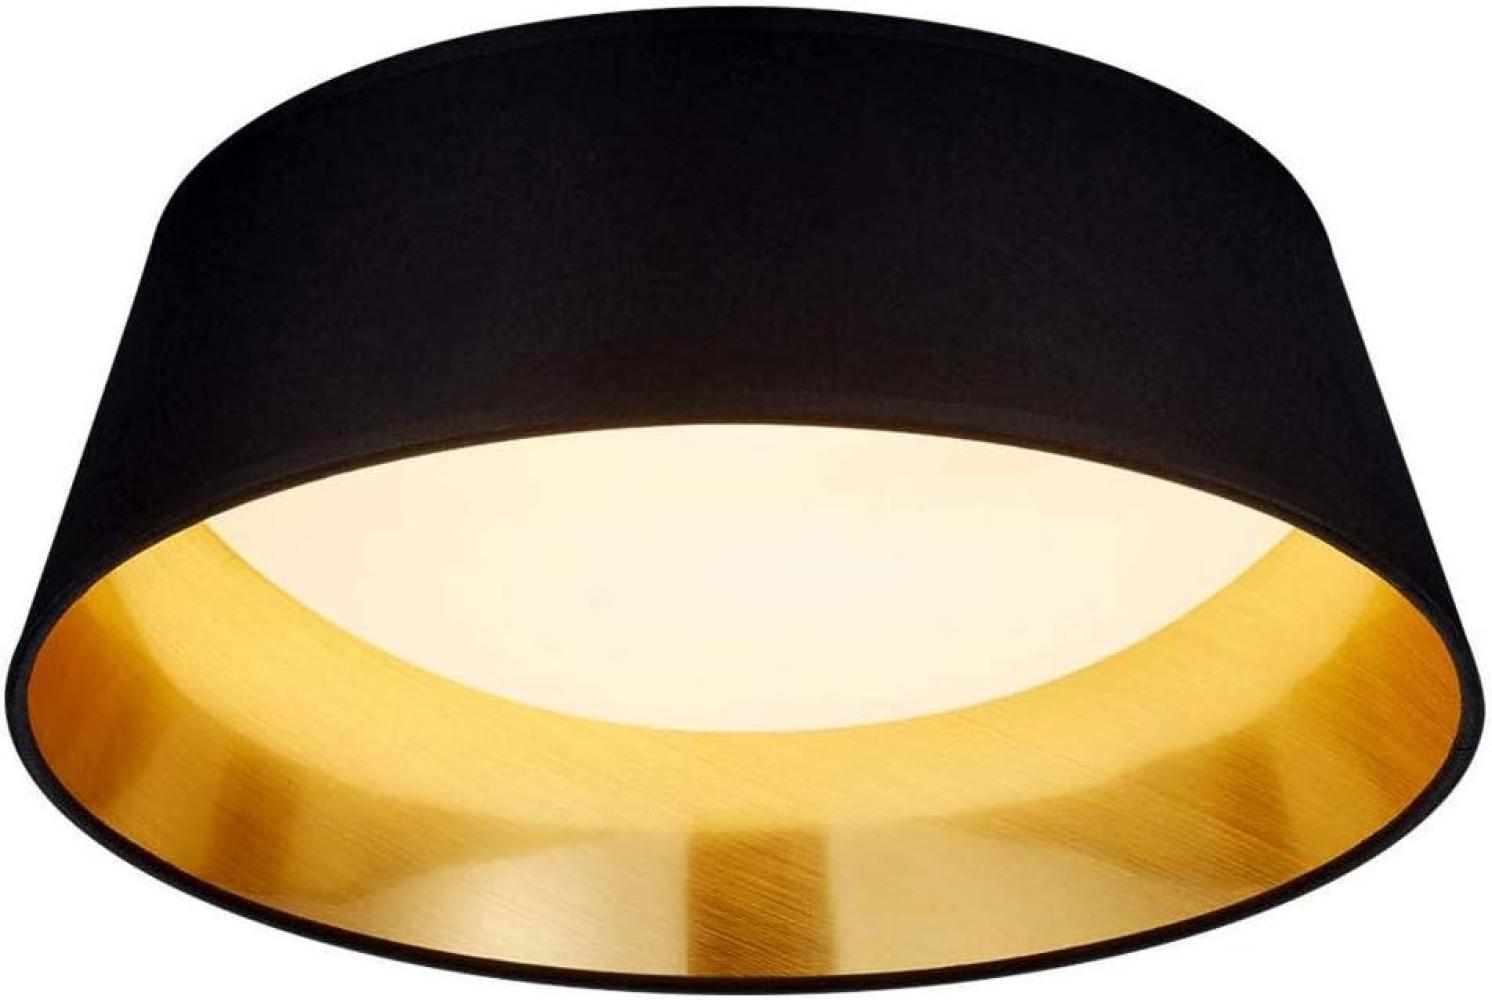 LED Deckenleuchte, schwarz gold, Textil, 34 cm, PONTS Bild 1